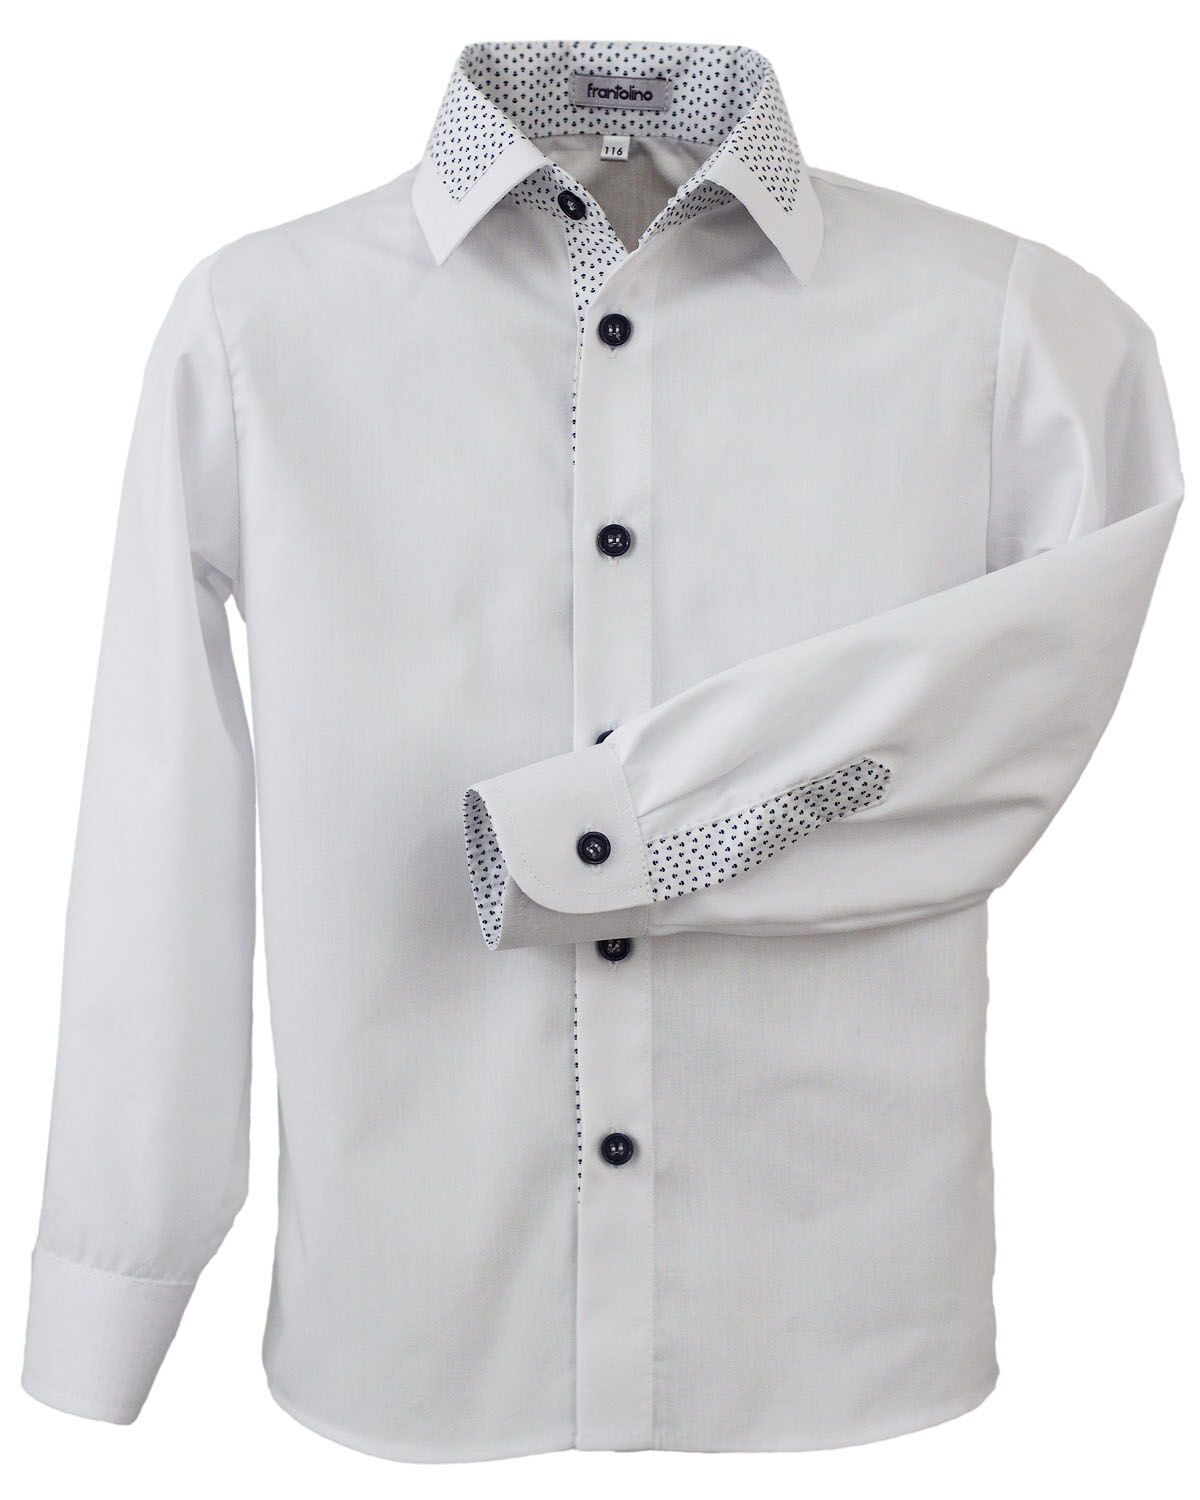 Рубашка с длинным рукавом для мальчика Frantolino белая 1113-136 - цена